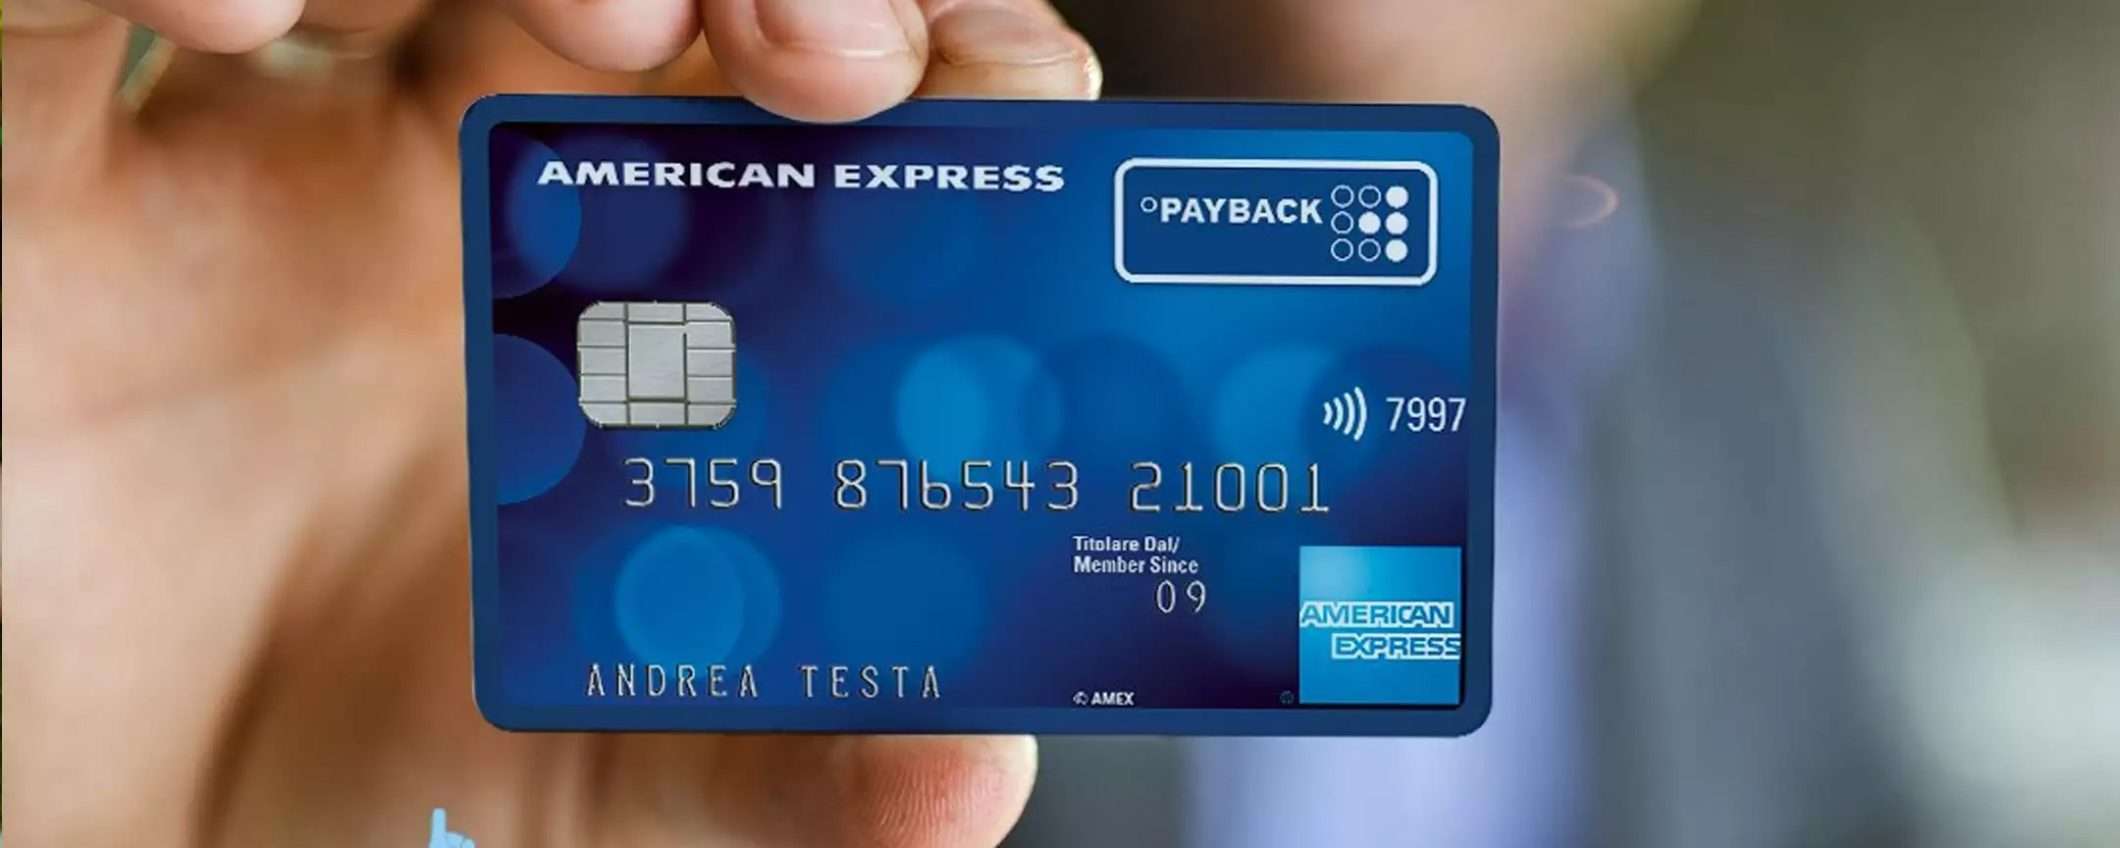 Trasforma le tue spese in premi con PAYBACK American Express